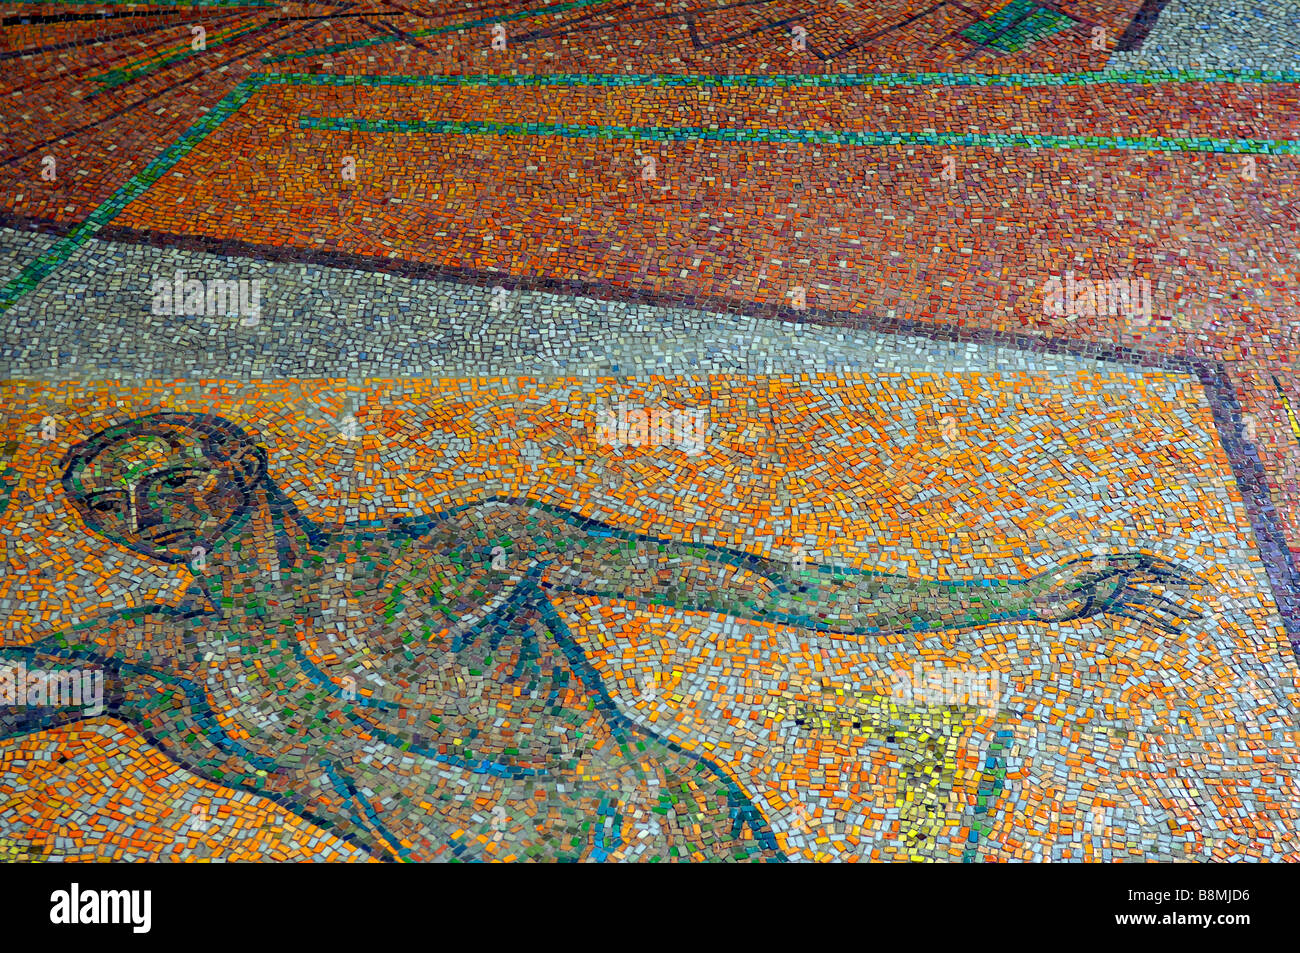 tanzgruppe mosaic düsseldorf NRW forum art germany deutschland orange Stock Photo